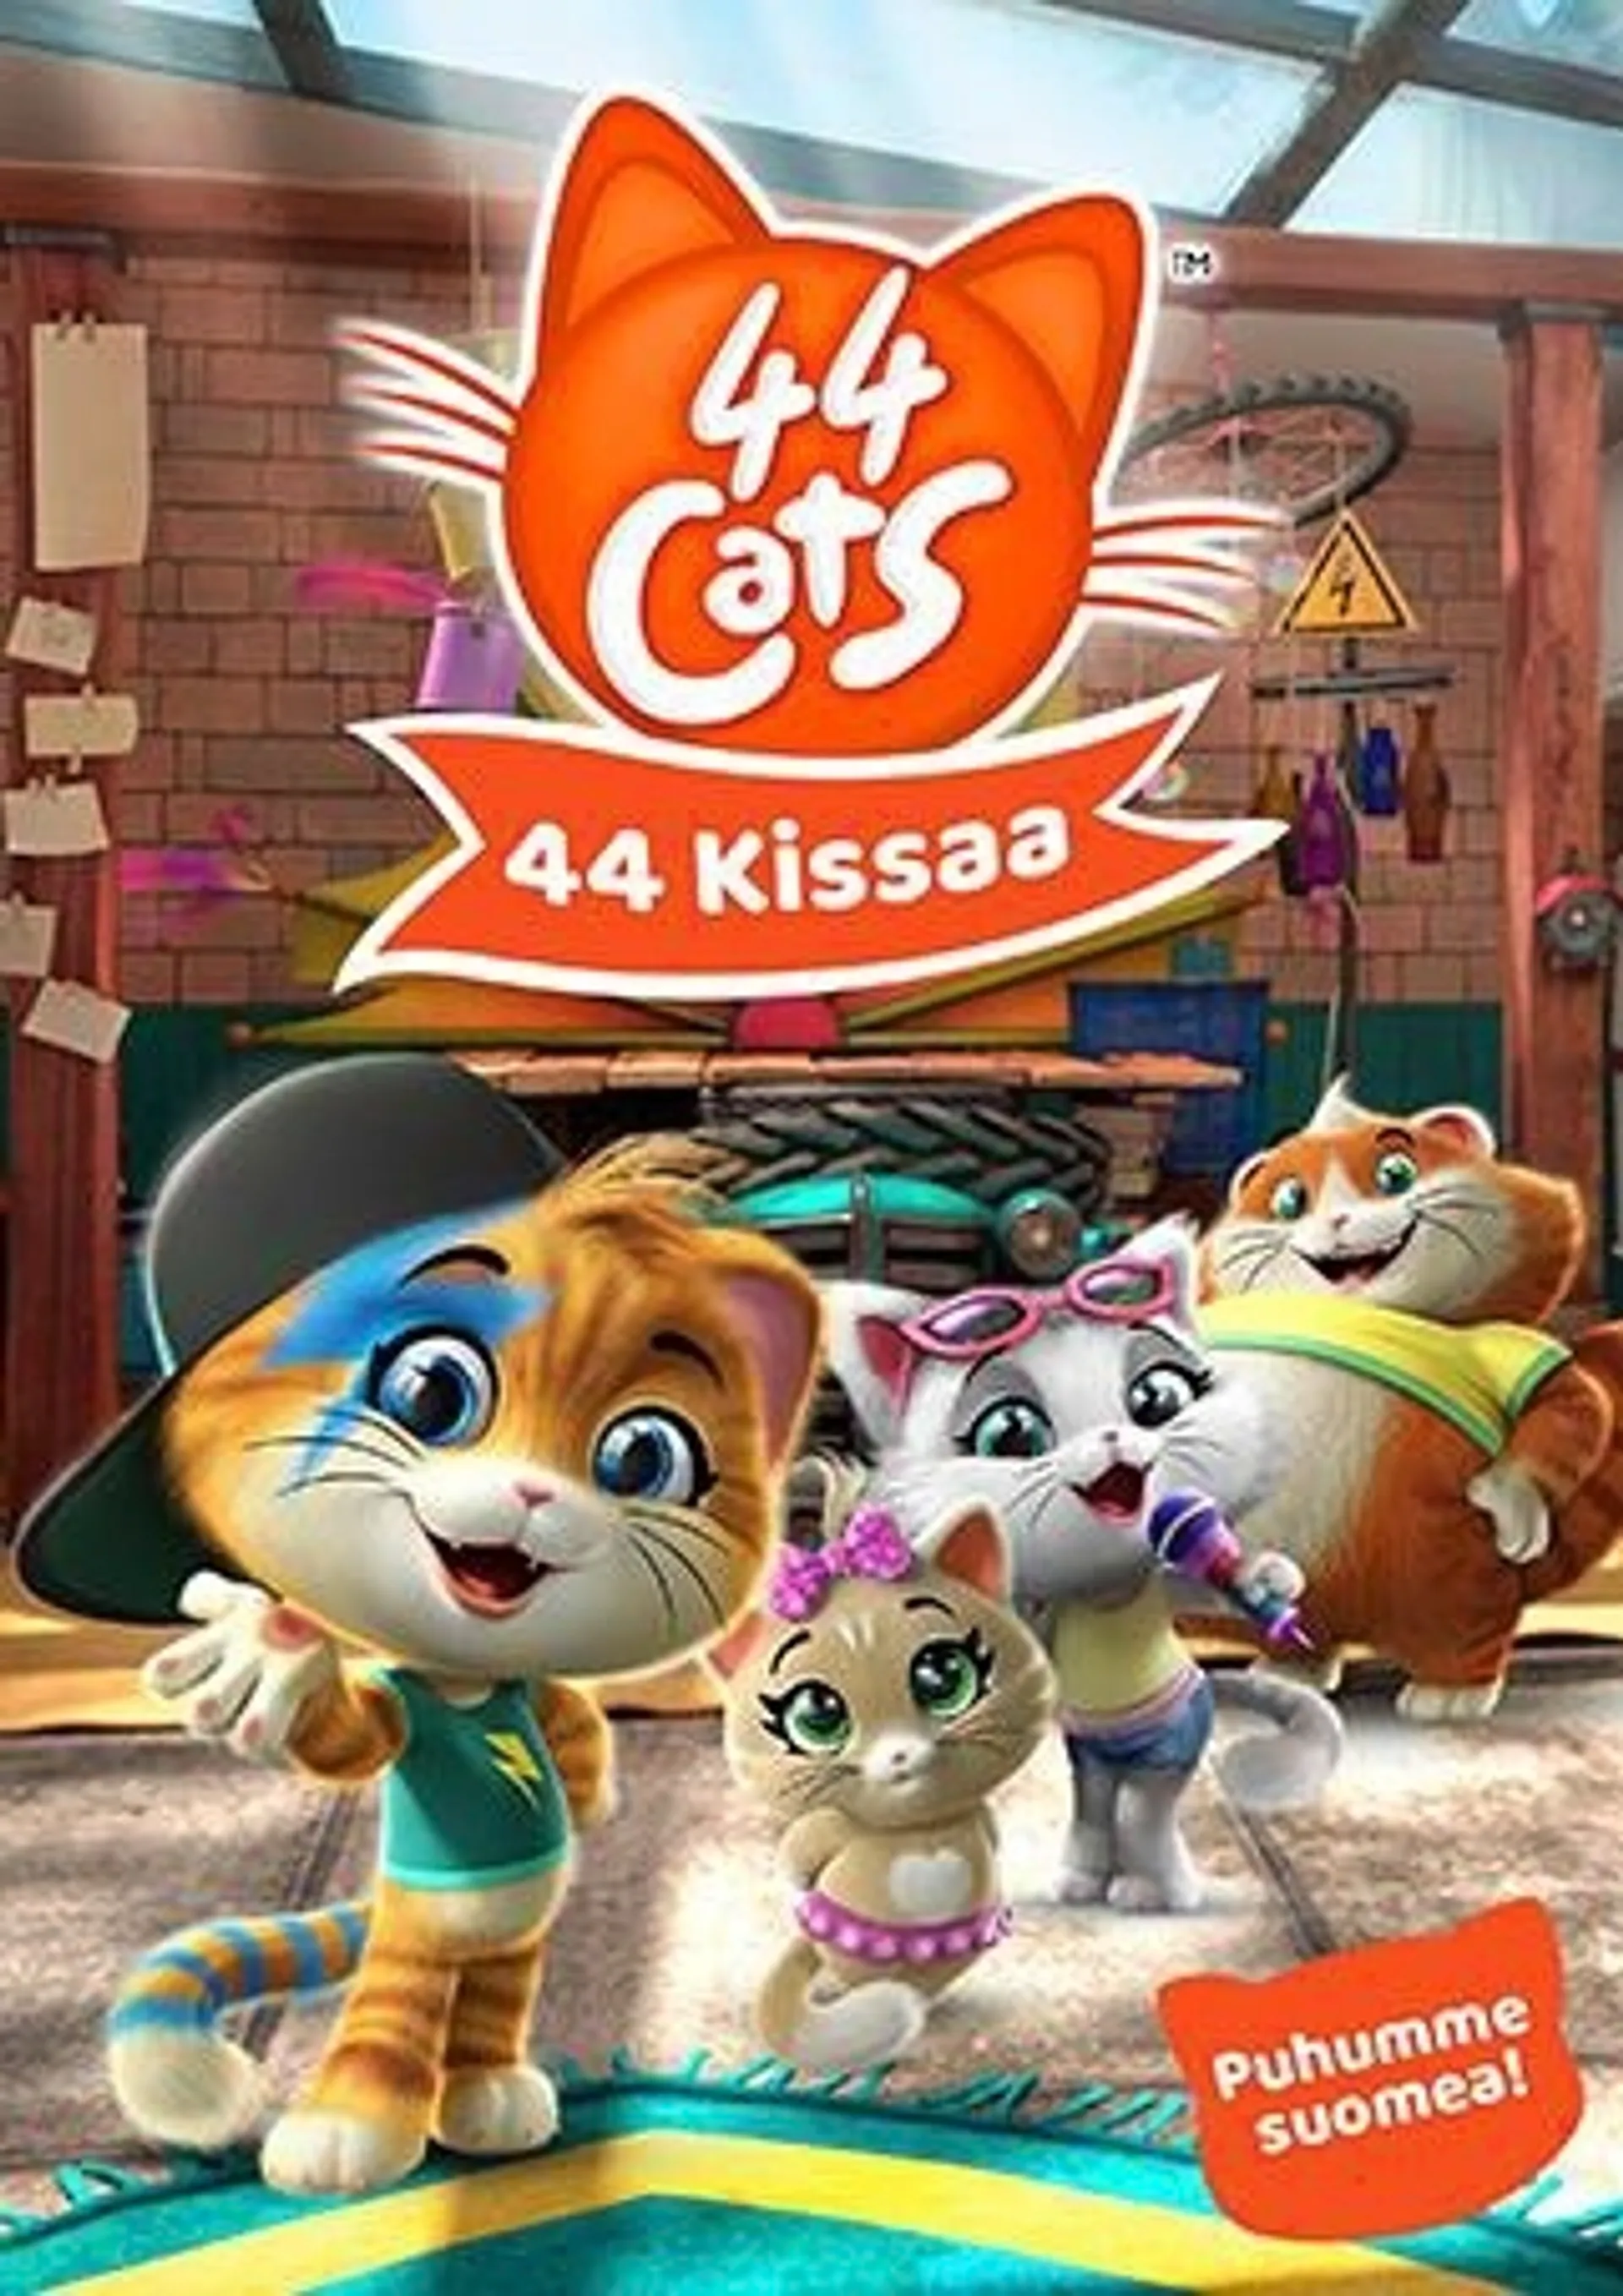 44 Cats 1 - 44 Kissaa DVD